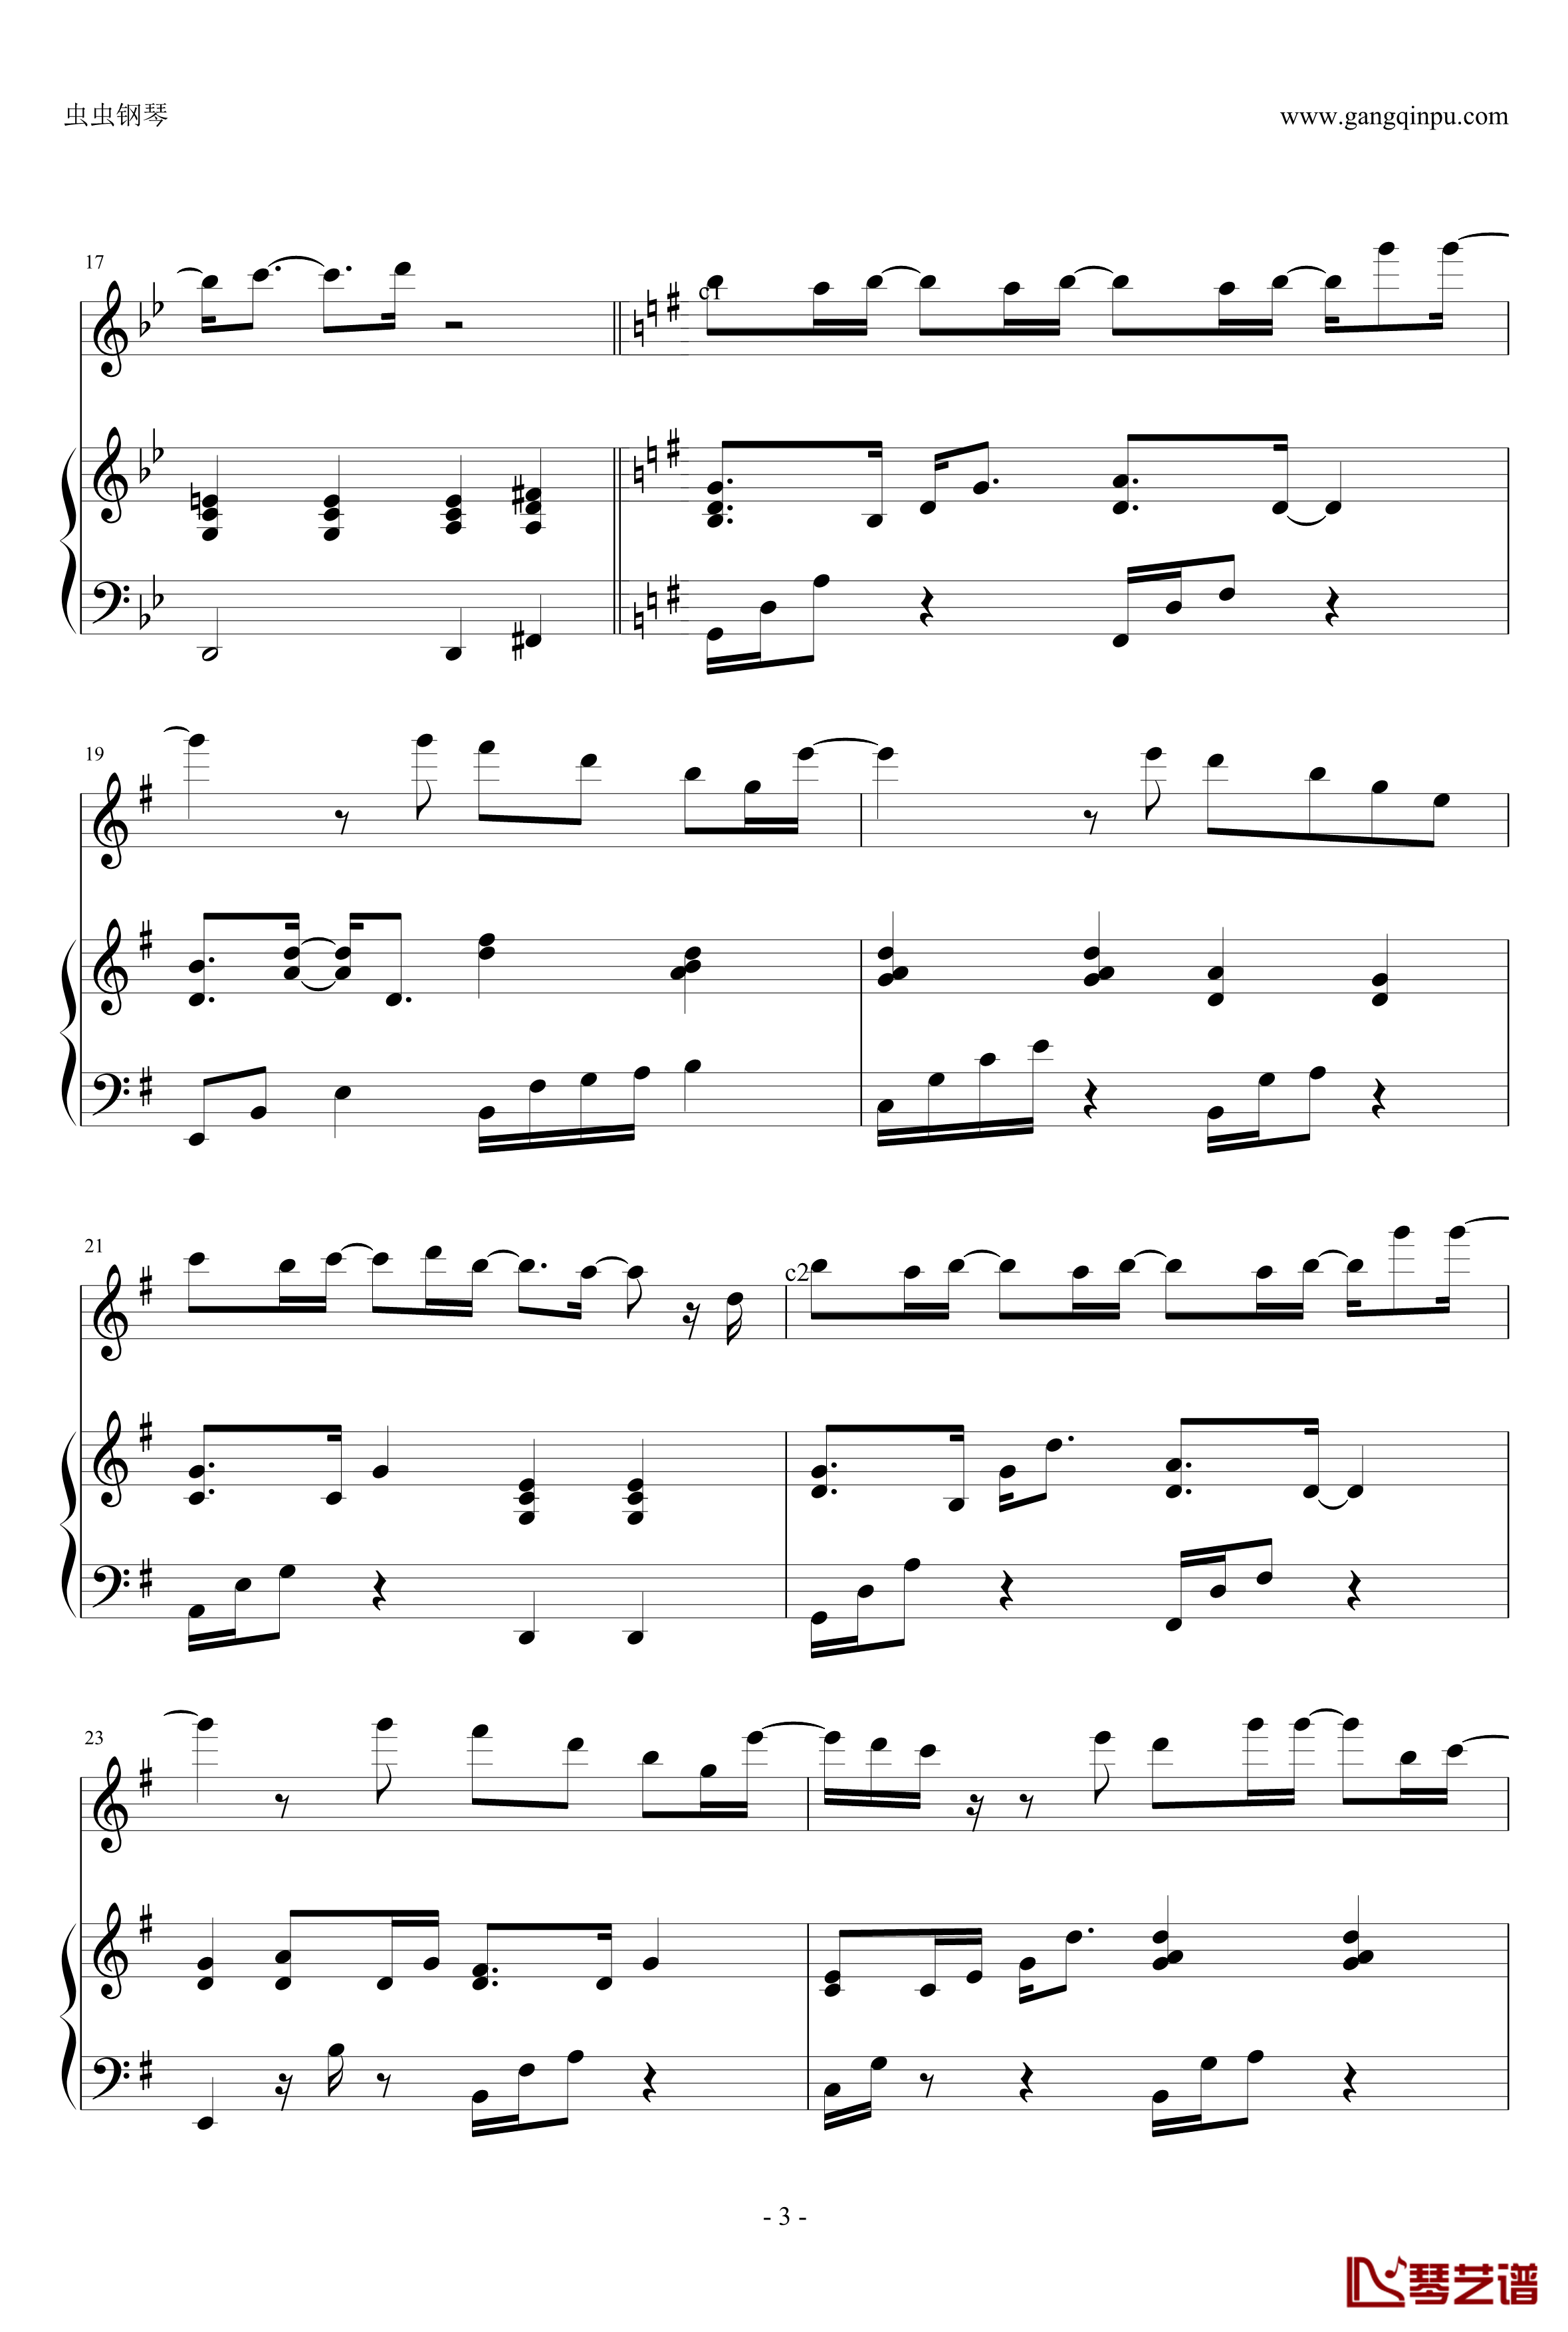 自我催眠钢琴谱-周杰伦弹唱版-周杰伦3